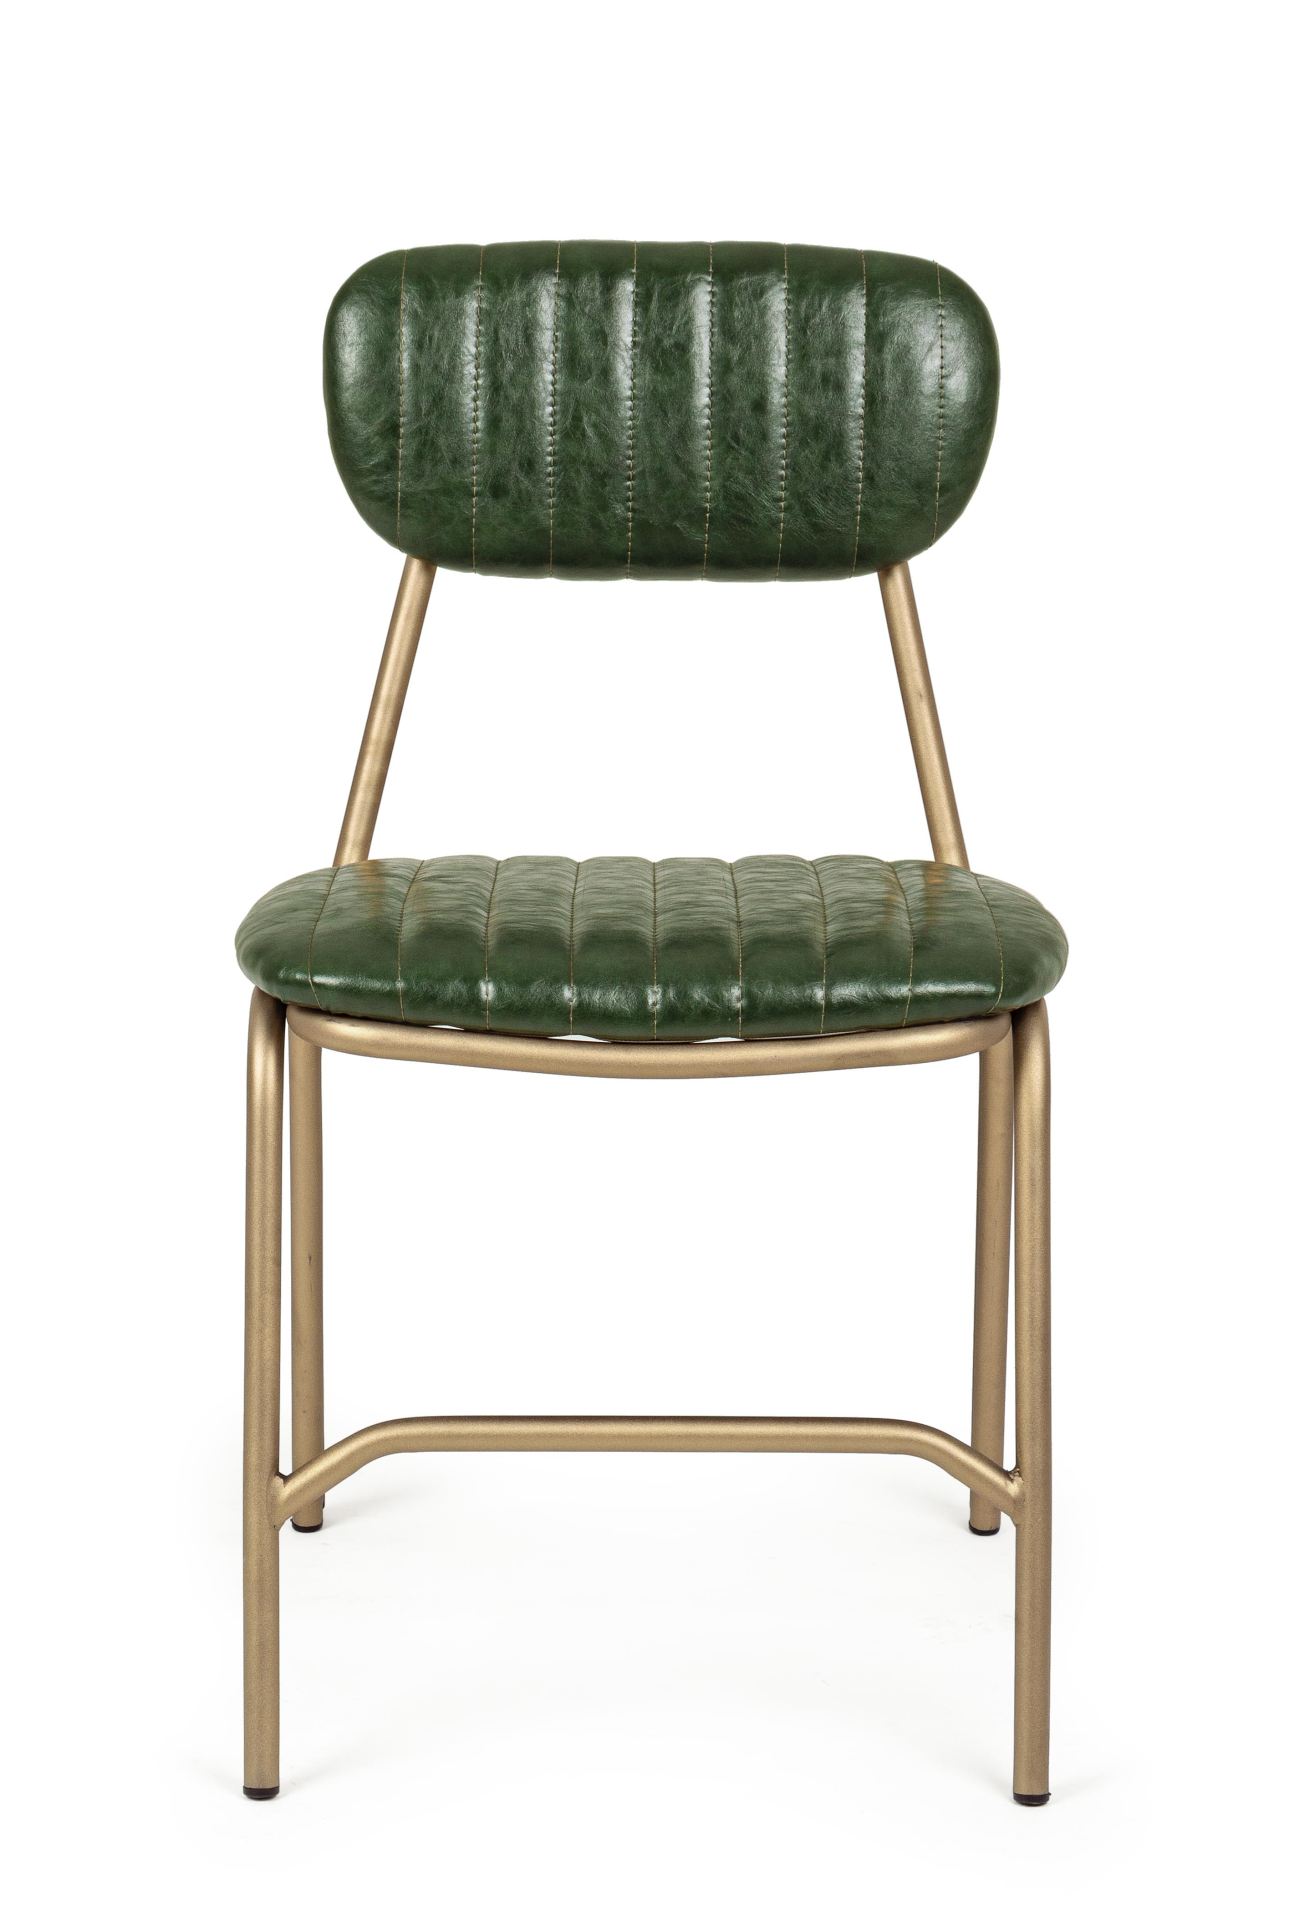 Der Stuhl Addy überzeugt mit seinem industriellen Design. Gefertigt wurde der Stuhl aus Kunstleder, welches einen grünen Farbton besitzt. Das Gestell ist aus Metall und ist Gold. Die Sitzhöhe beträgt 46 cm.